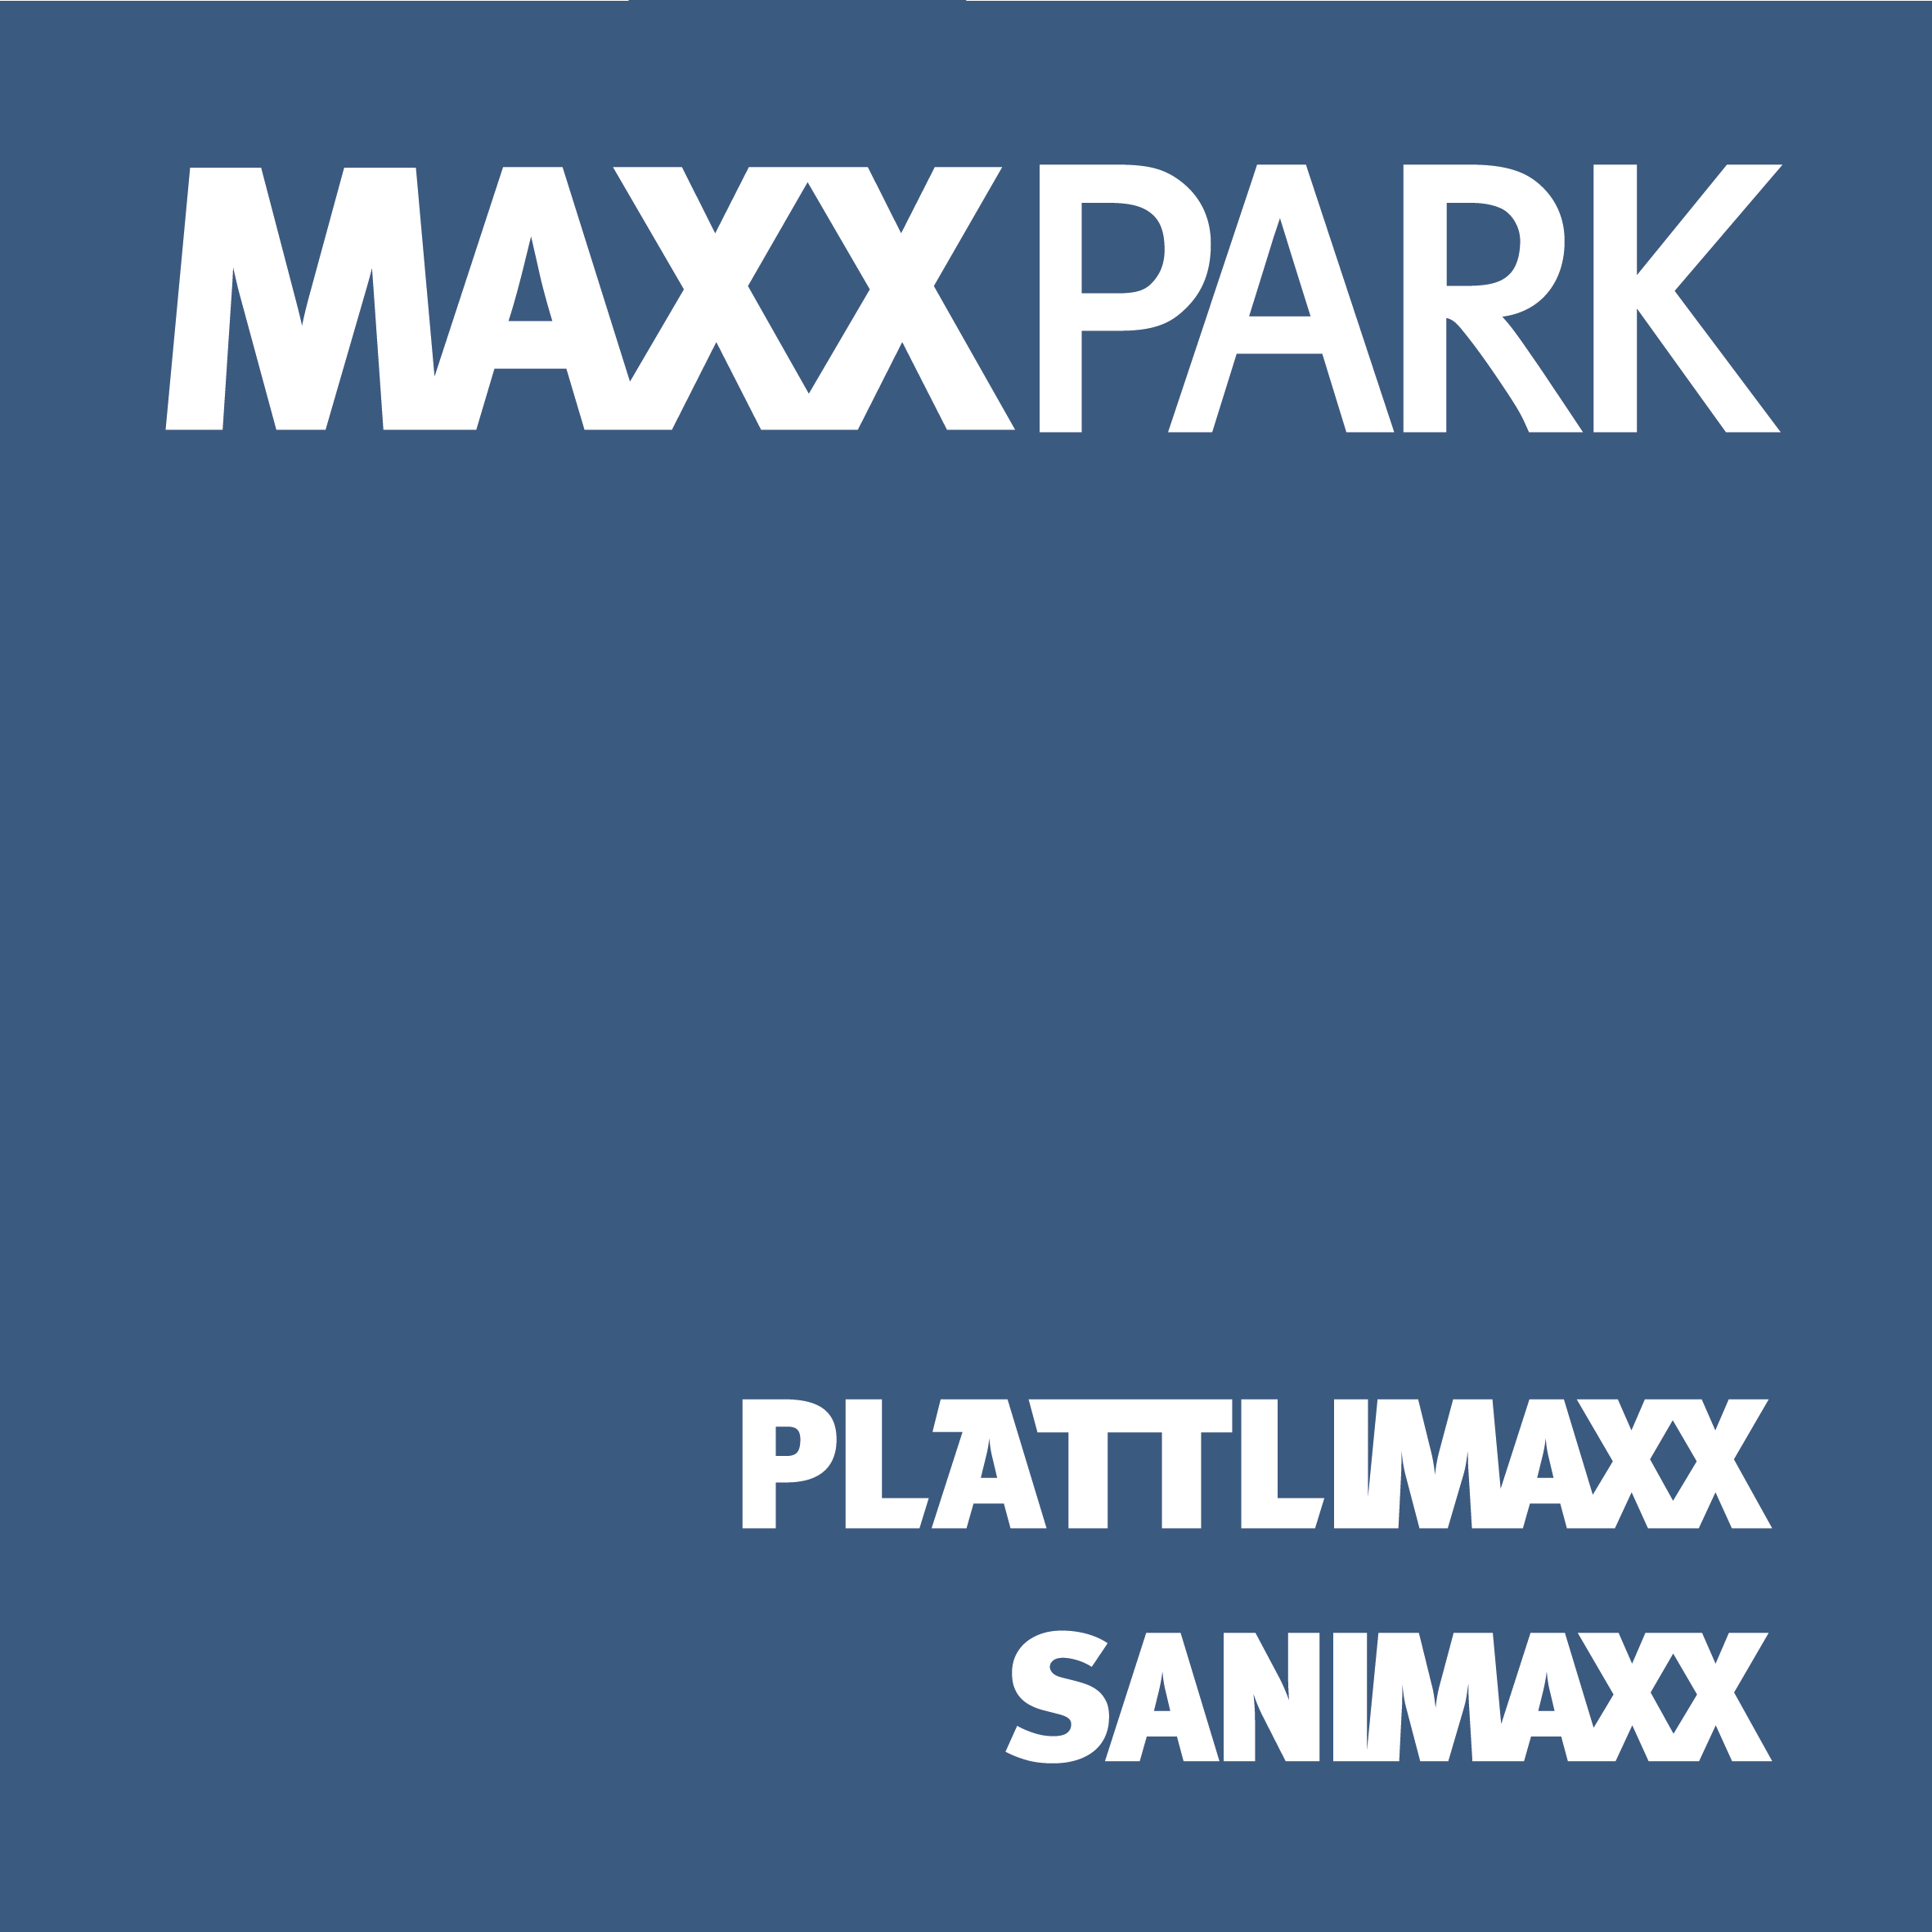 Logo maxxpark cymk plättlimaxx sanimaxx 1